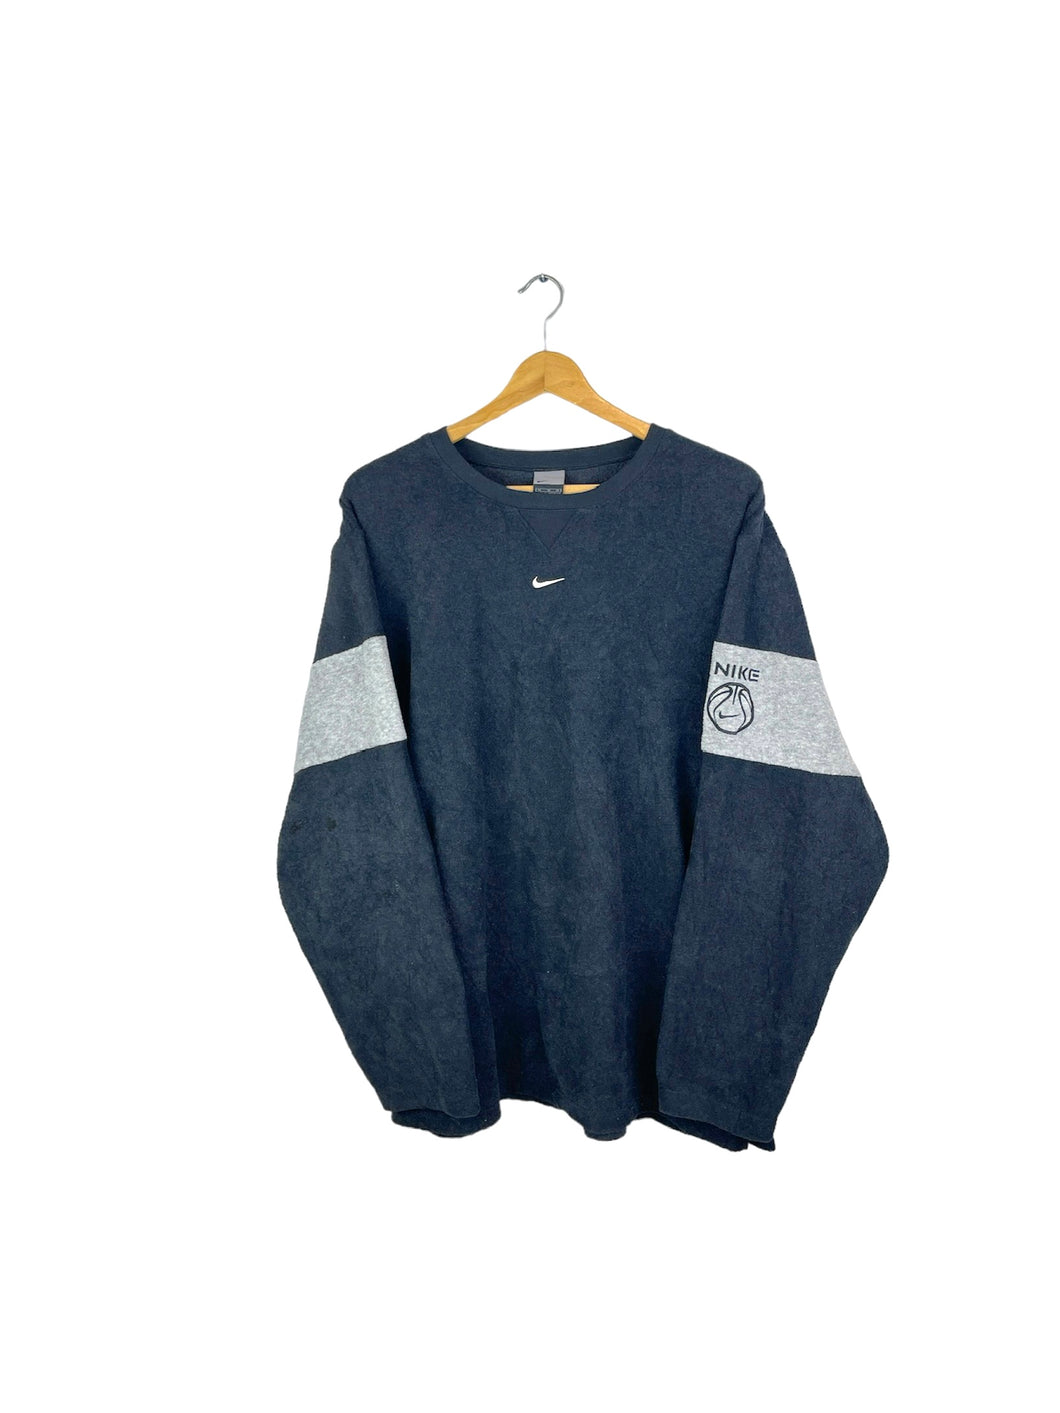 Nike Fleece Sweatshirt - XLarge